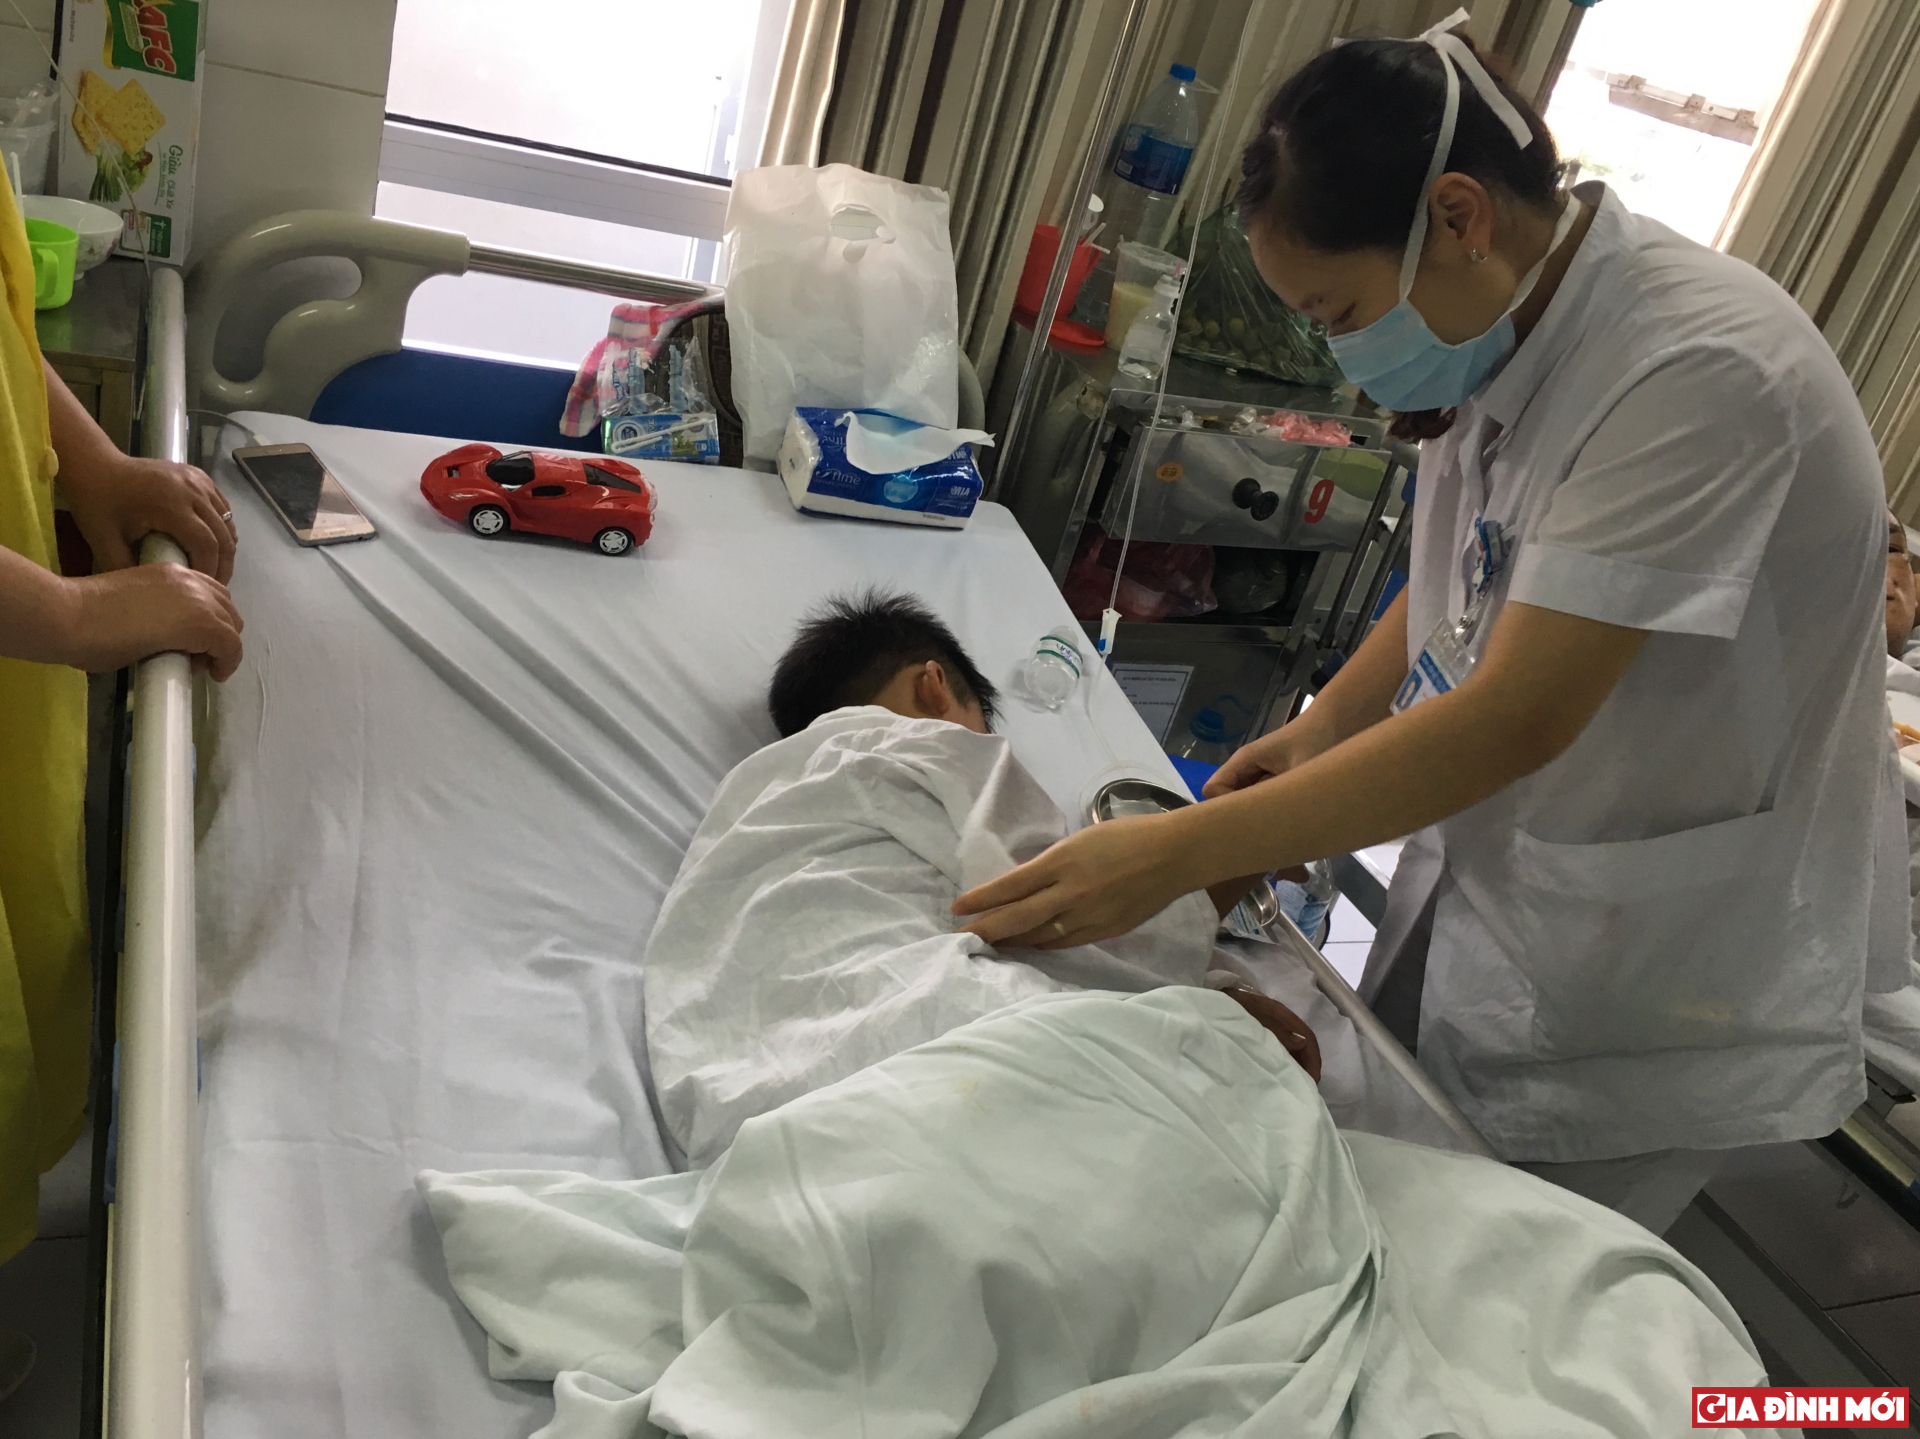 Hiện bé đang được điều trị tại Bệnh viện Hữu Nghị Việt Đức